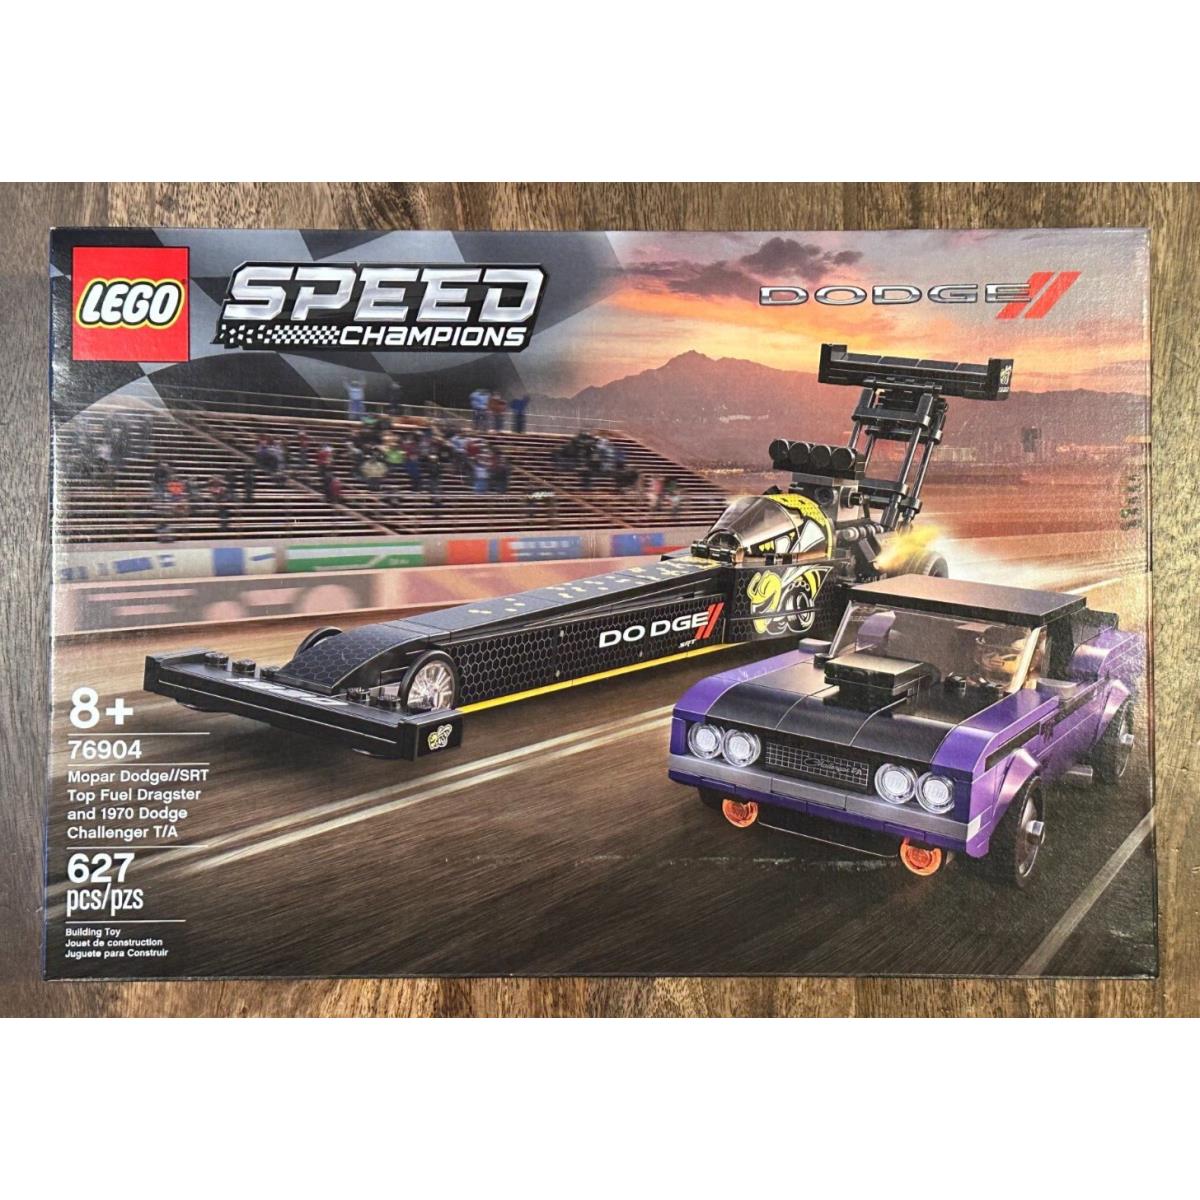 Lego Speed Champions 76904: Mopar Dodge Srt Dragster and 1970 Dodge Challenger